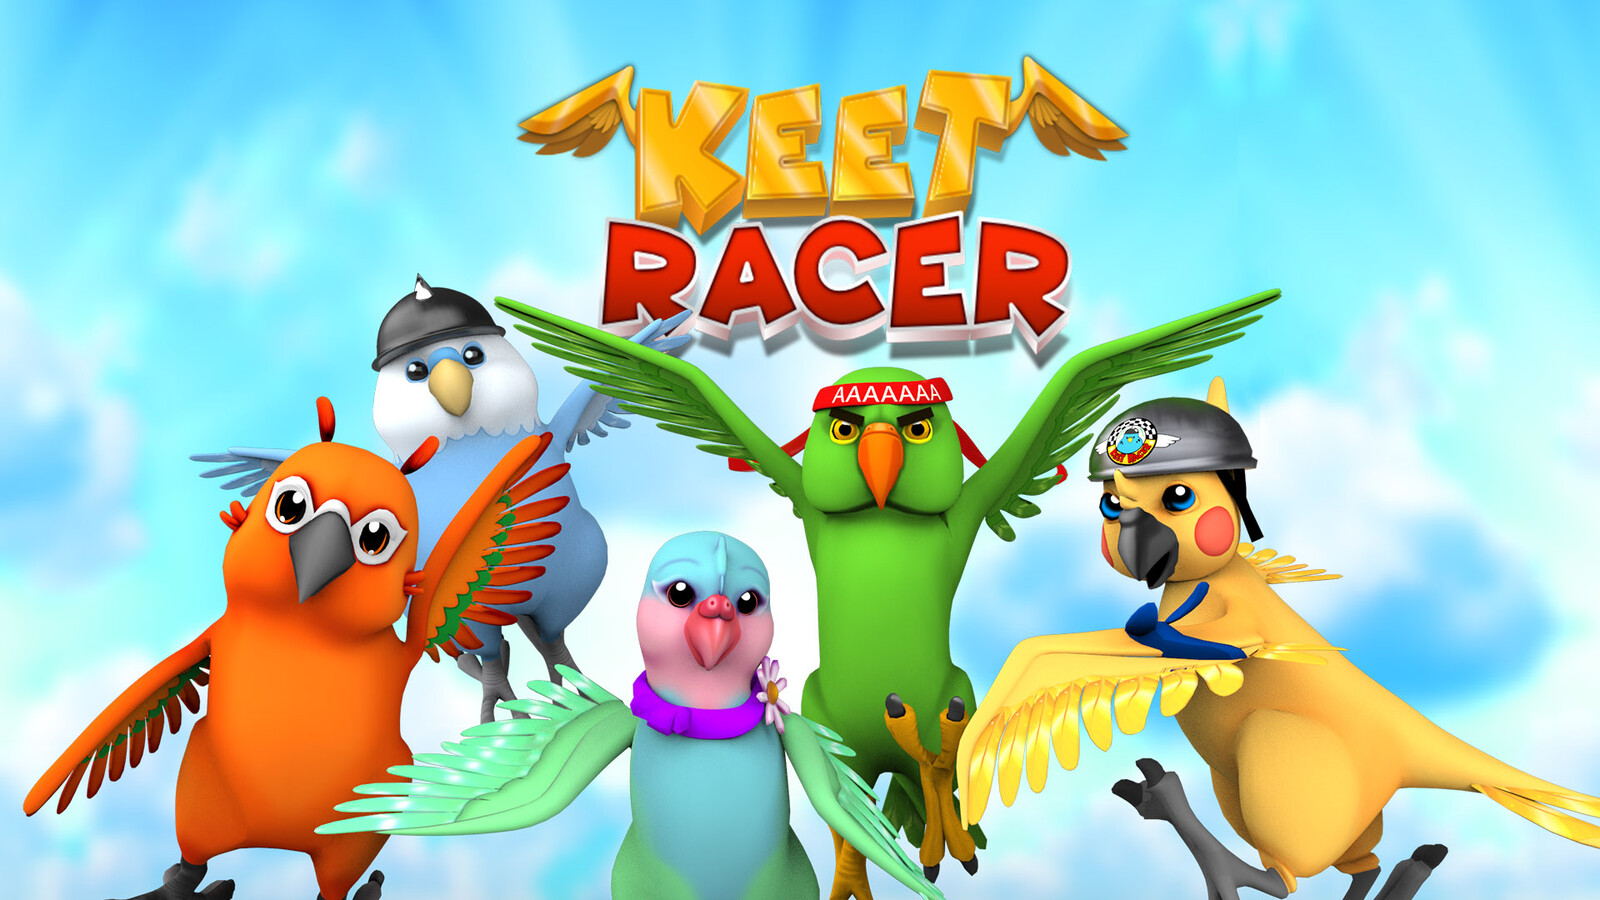 Keet Racer Full Game Concept